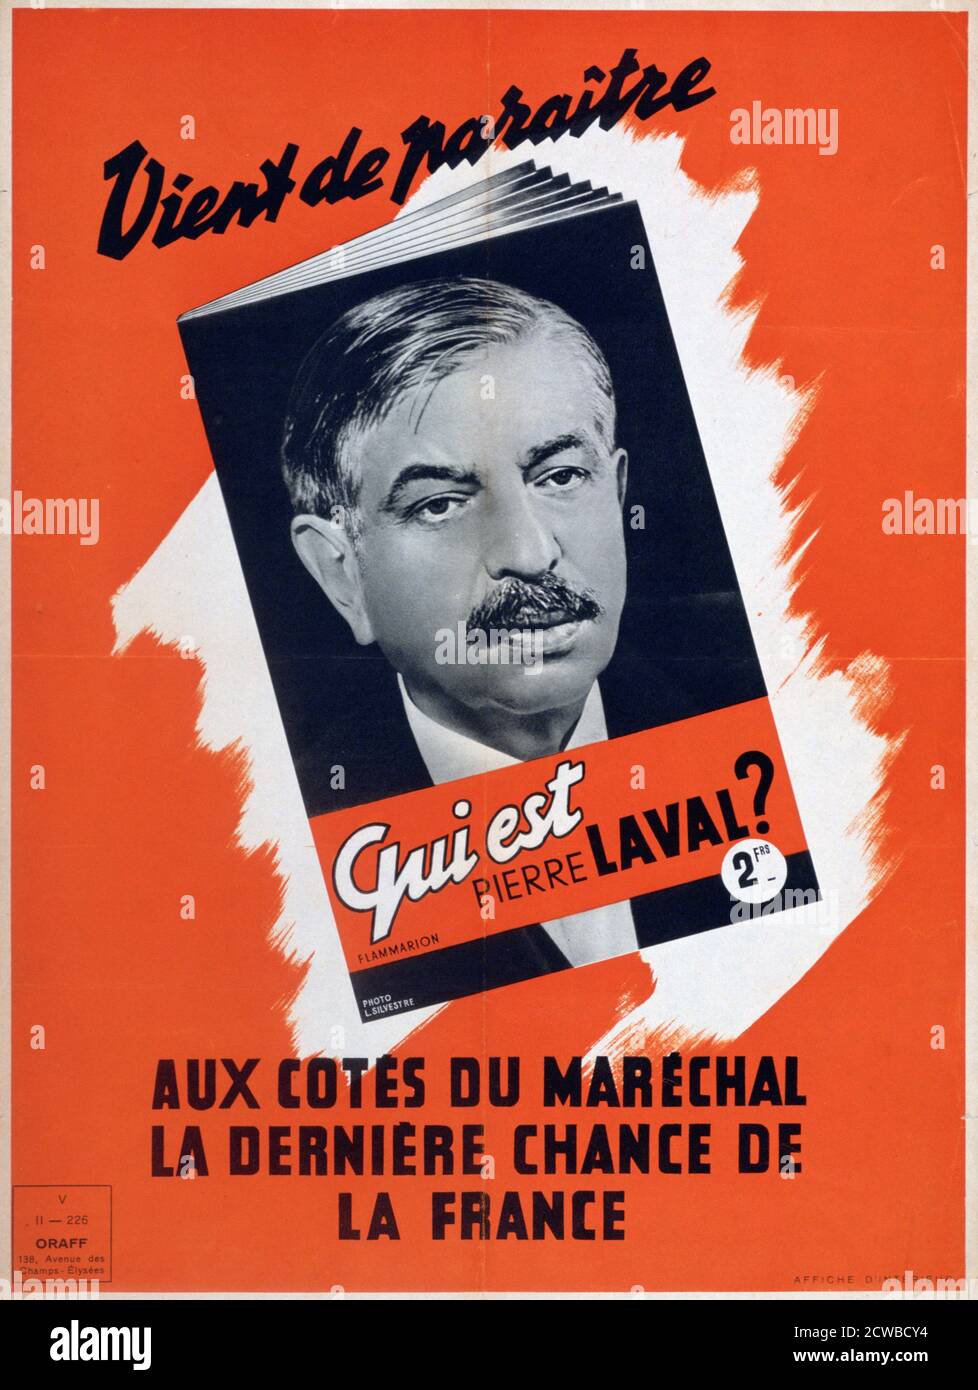 Wer ist Pierre Laval?', Vichy französisches Propagandaplakat, 1940-1944. Laval (1883-1945) war ein französischer Politiker und diente vier Mal als Premierminister von Frankreich, der letzte unter der kollaborationistischen Vichy-Regierung. Nach der Befreiung Frankreichs wurde er des Hochverrats für schuldig befunden und hingerichtet. Der Künstler ist unbekannt. Stockfoto